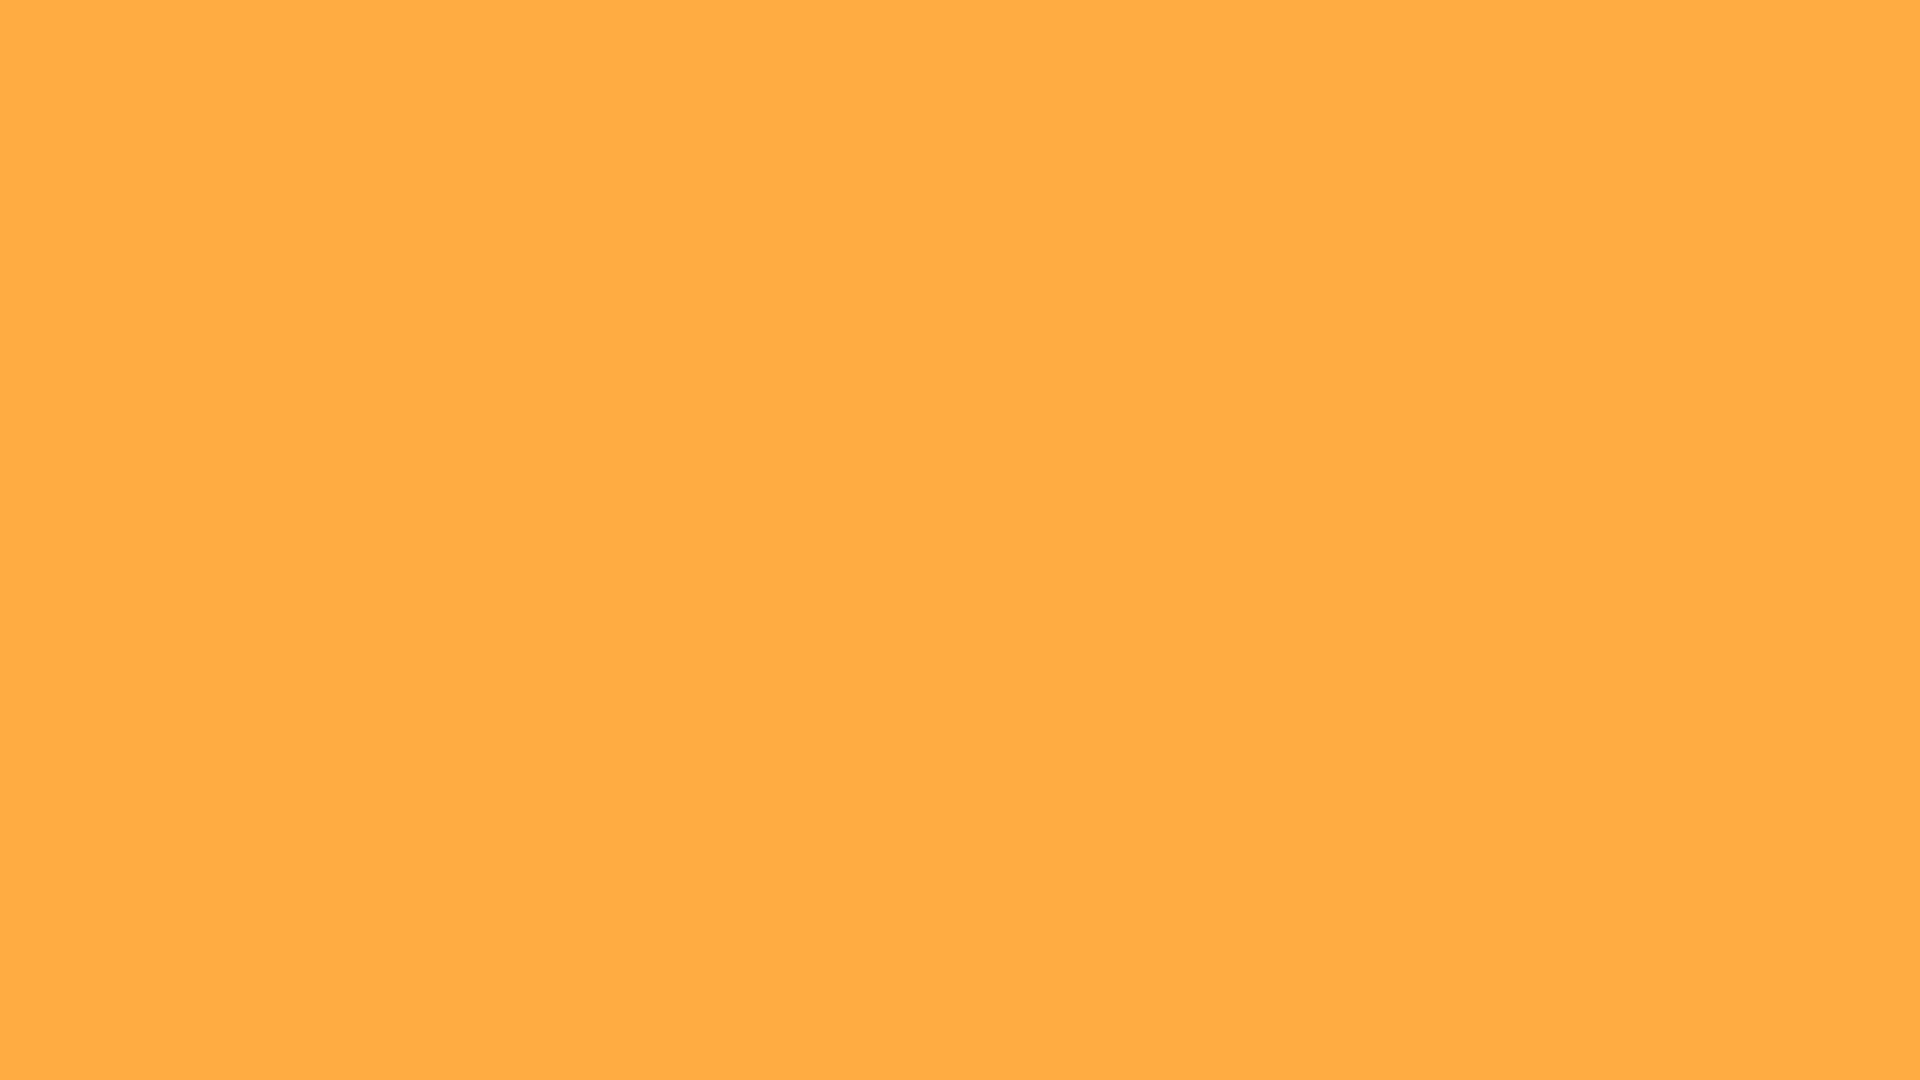 Màu cam vàng đồng là một sắc màu rất đặc biệt, khiến cho không gian trở nên tươi sáng và sôi động hơn rất nhiều. Nếu bạn muốn thay đổi màu nền cho máy tính của mình, hãy cùng xem những mẫu nền màu cam vàng đồng độc đáo này để có thêm những cảm hứng mới mẻ nhé!